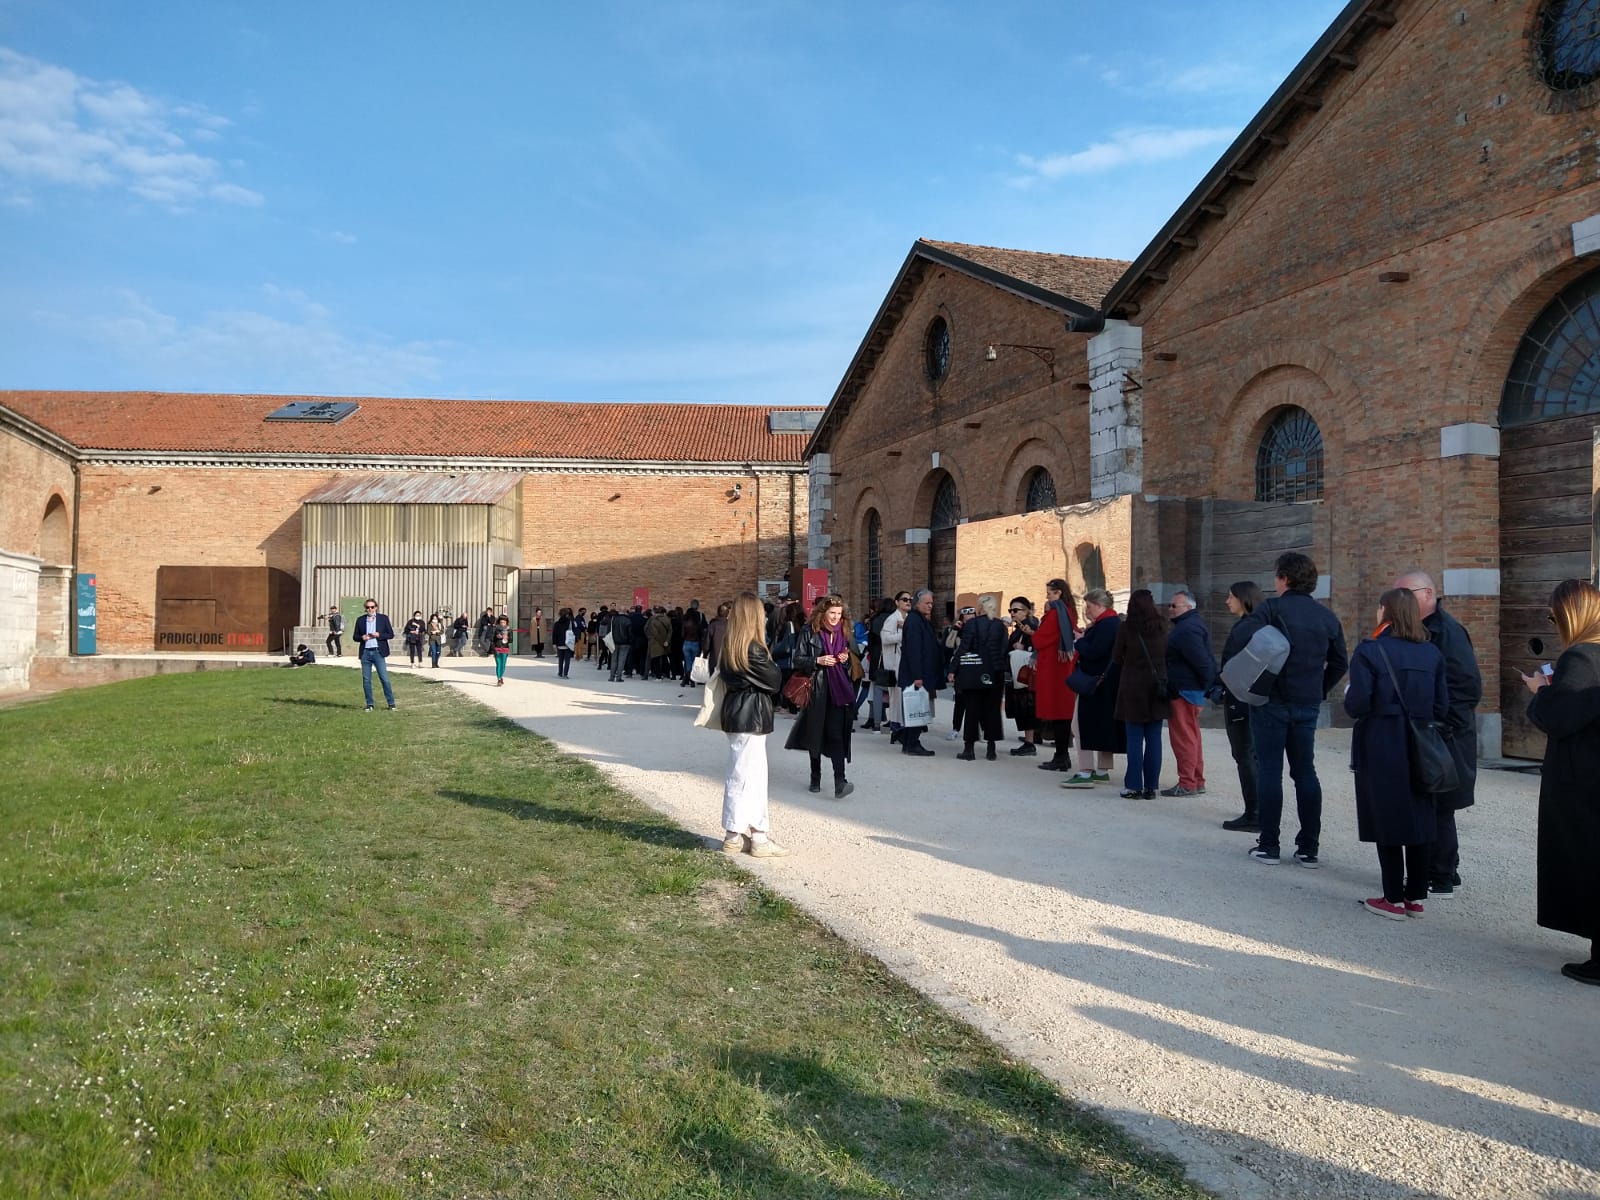 Biennale di Venezia, il Padiglione Italia oggi ha chiuso in anticipo per guasto tecnico